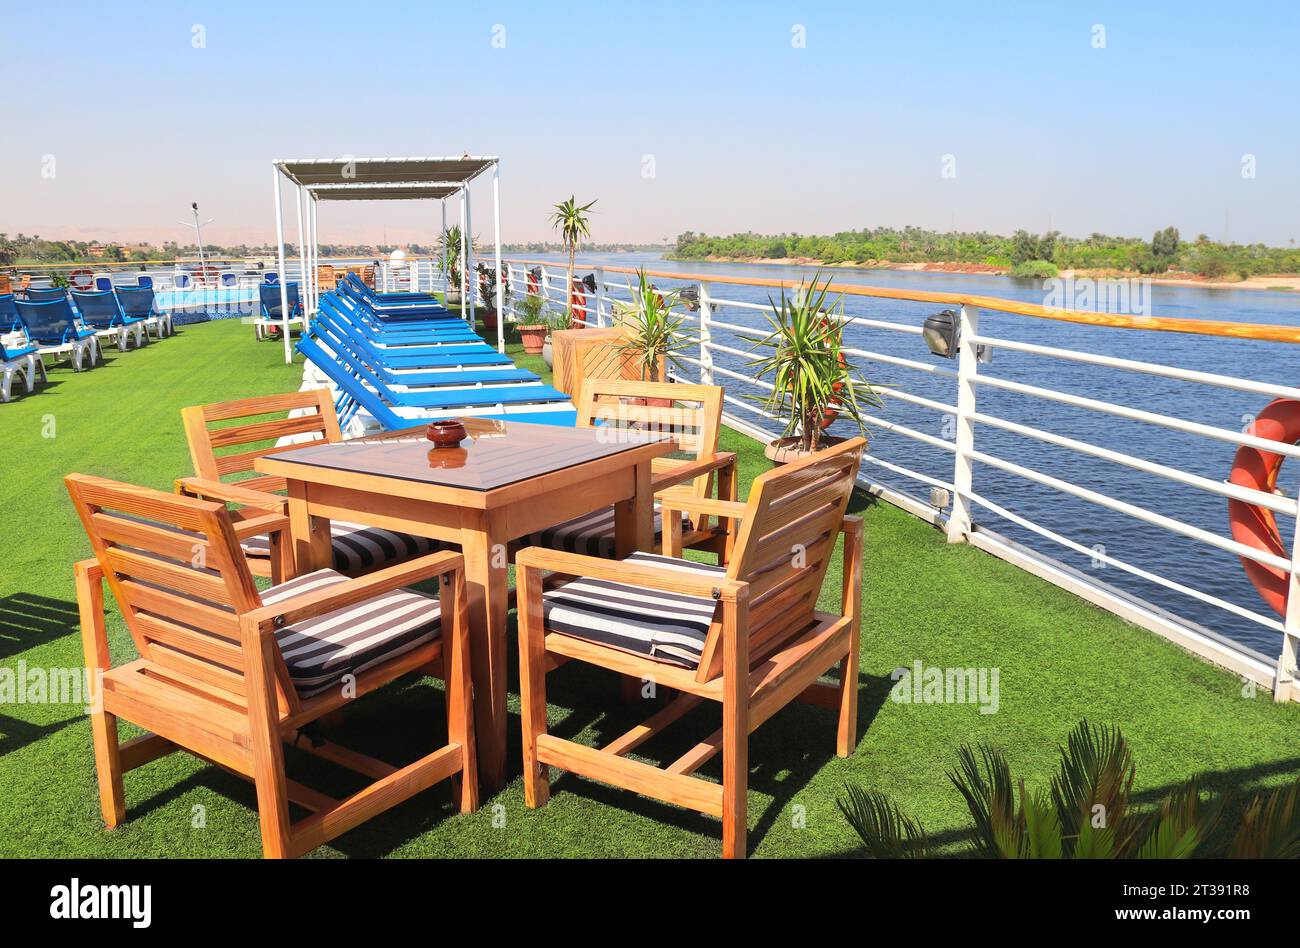 Sundesk sur le bateau de croisière. Un endroit pour se détendre, tables et transat sur le pont. Croisière de luxe sur le Nil, Egypte, Afrique. Vacances d'été, détente sur les bateaux de croisière Banque D'Images